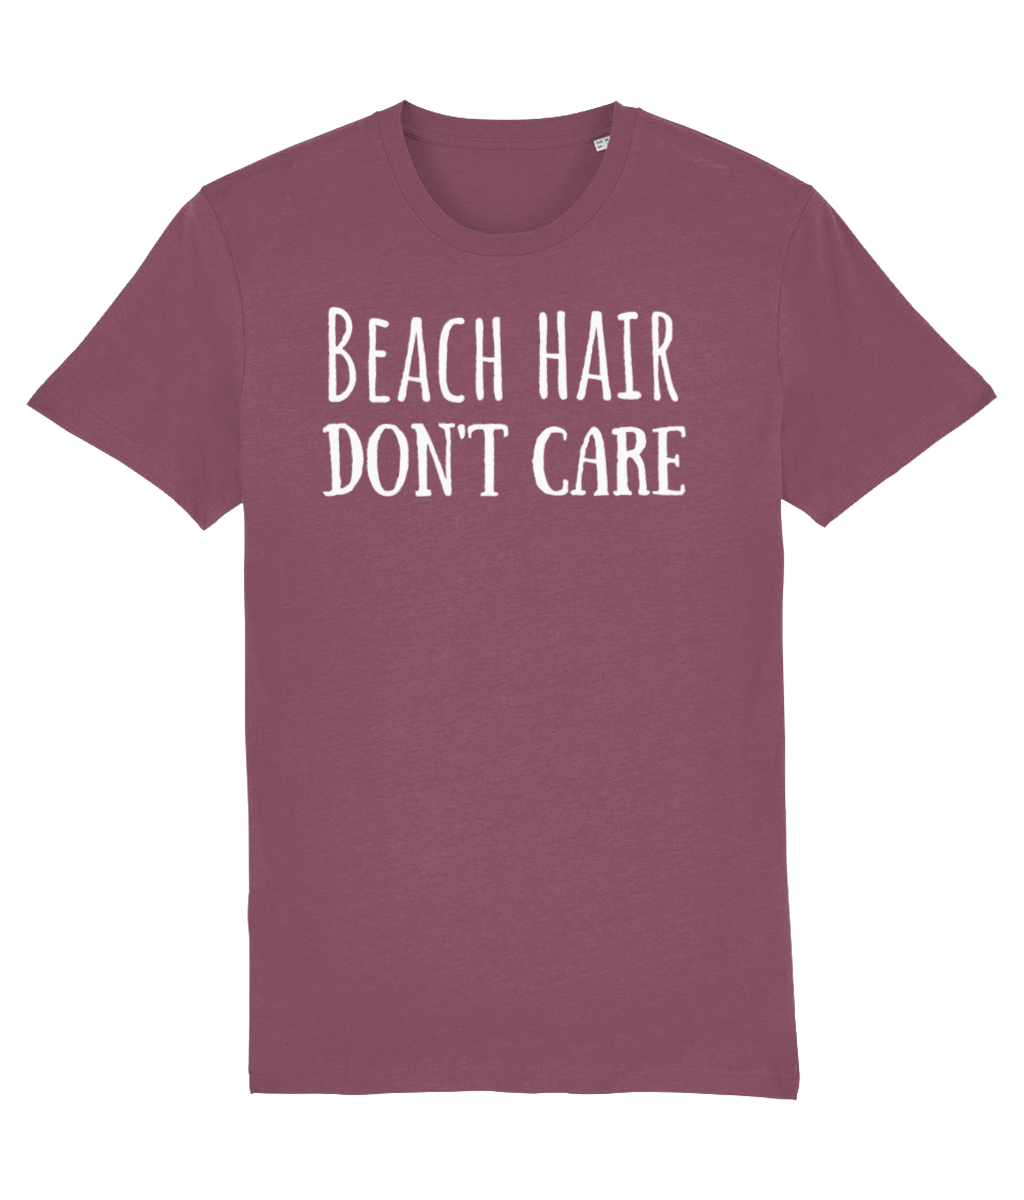 Beach Hair Don't Care Unisex Organic Cotton T-shirt